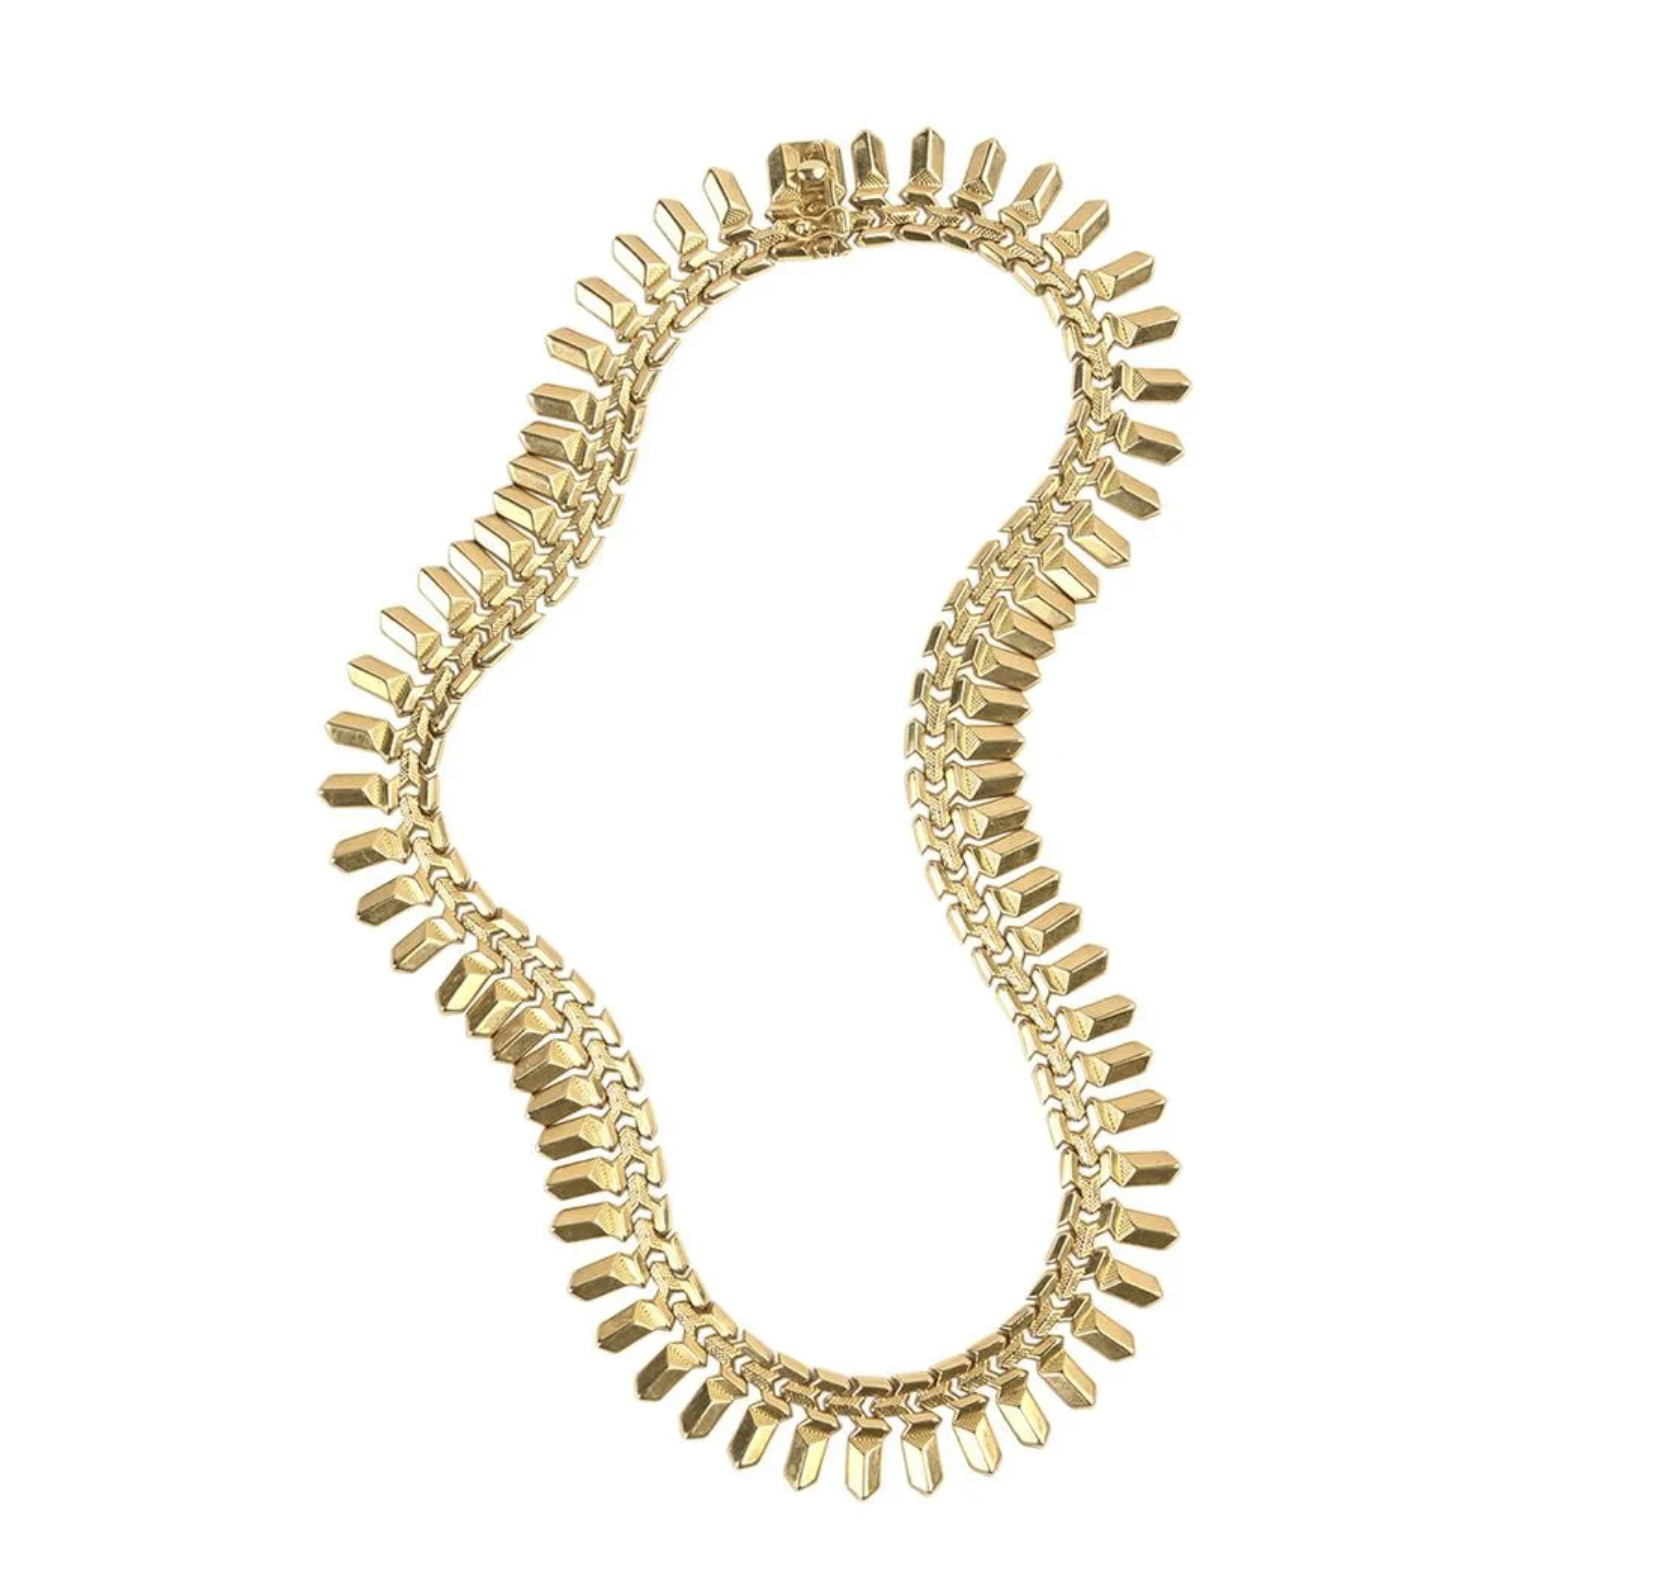 18K gold fringe necklace, est. $1,500-$2,500